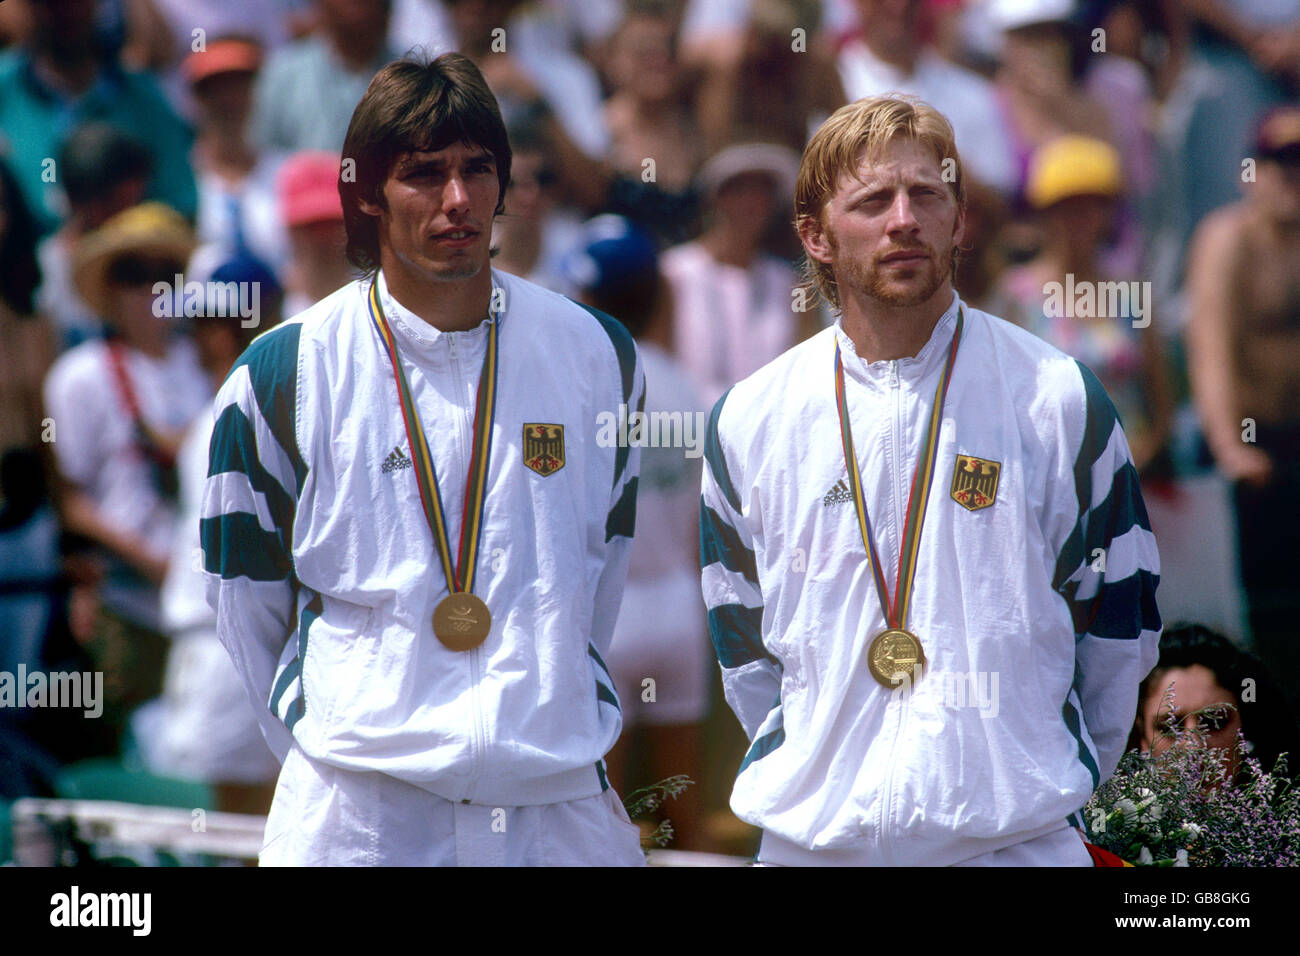 1992-barcelona-olympische-spiele-tennis-herren-doppel-finale-deutschland-boris-becker-und-michael-stich-sudafrika-wayne-gb8gkg.jpg